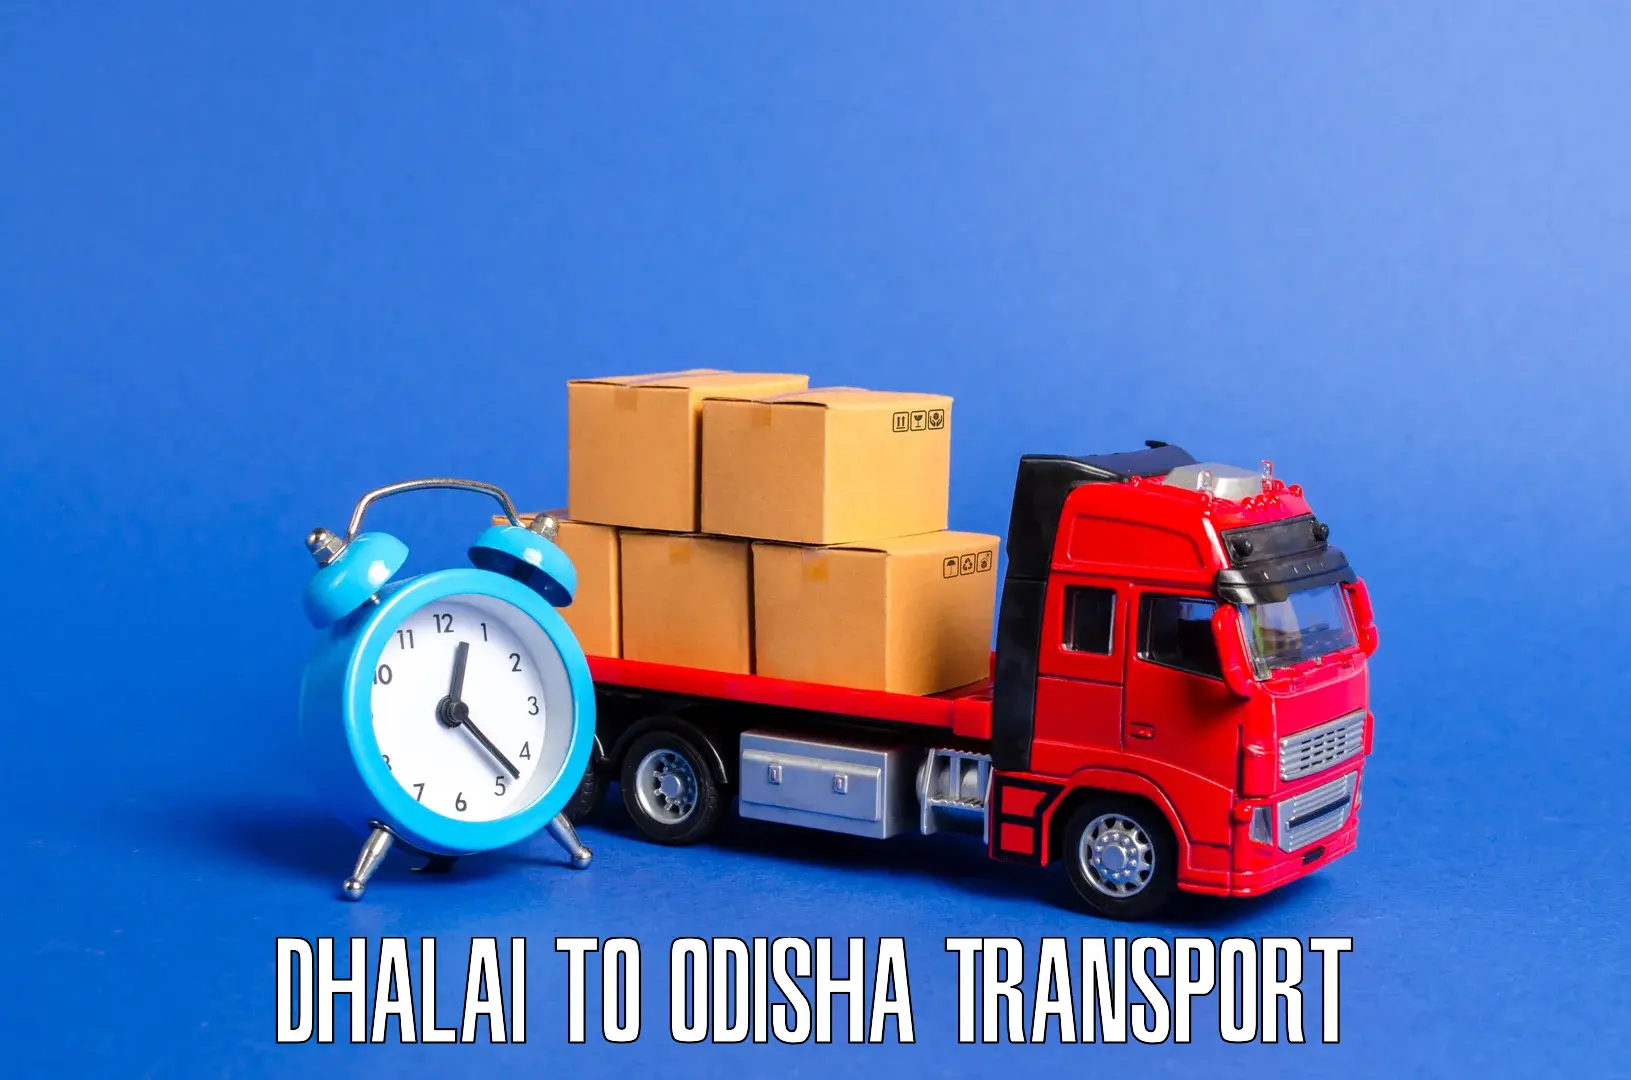 Furniture transport service Dhalai to Mathili